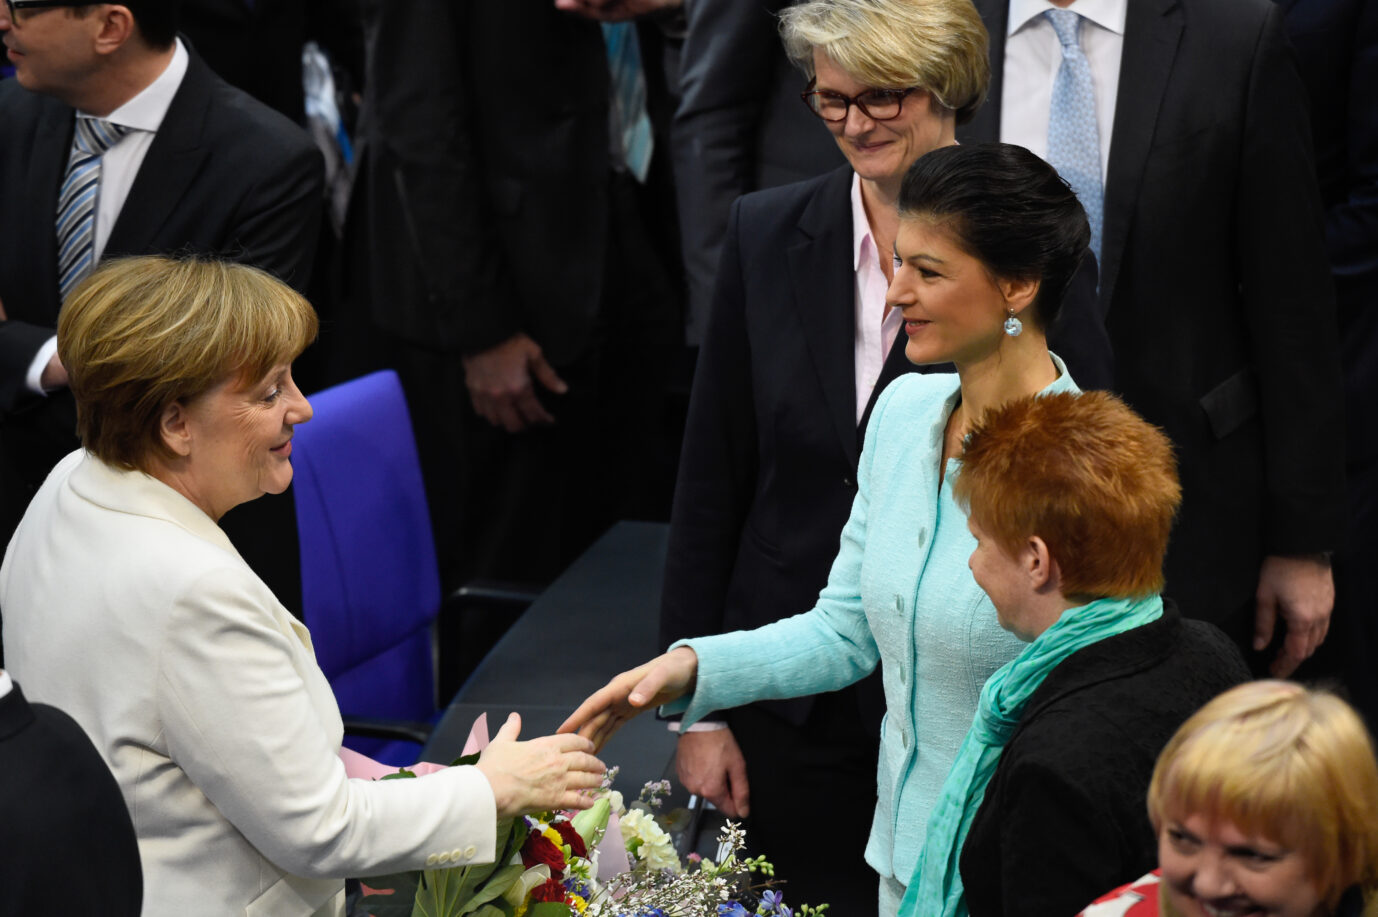 Auf dem Foto gratuliert Sahra Wagenknecht Angela Merkel zur Wahl als Bundeskanzlerin. Heute schließt sie Bündnisse mit der CDU nicht aus. (Themenbild/Symbolbild)